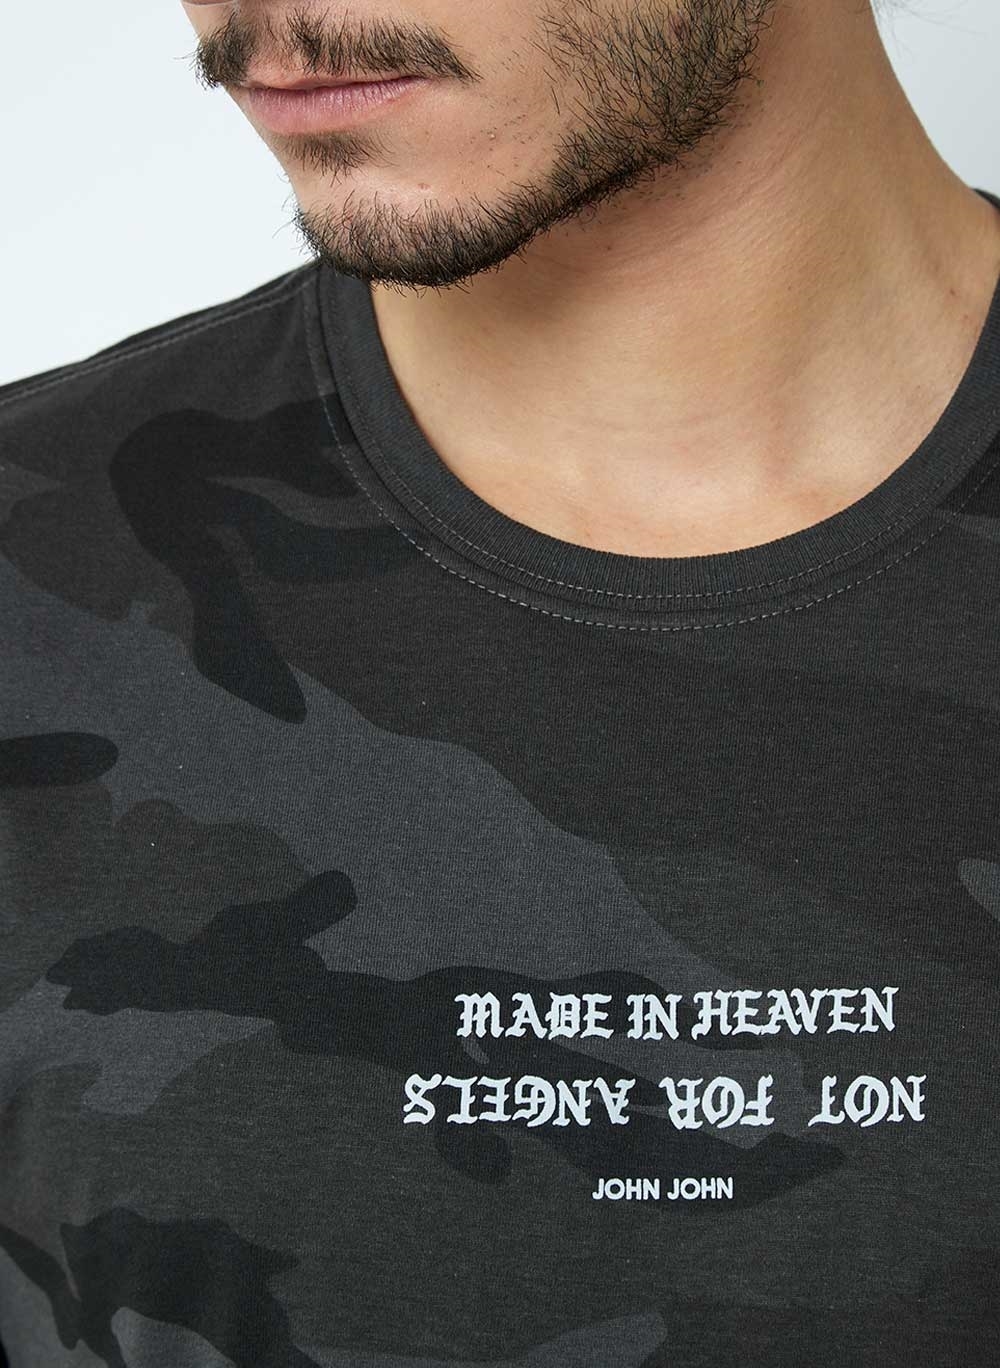 Camiseta John John Made In Heaven Verde - Compre Agora